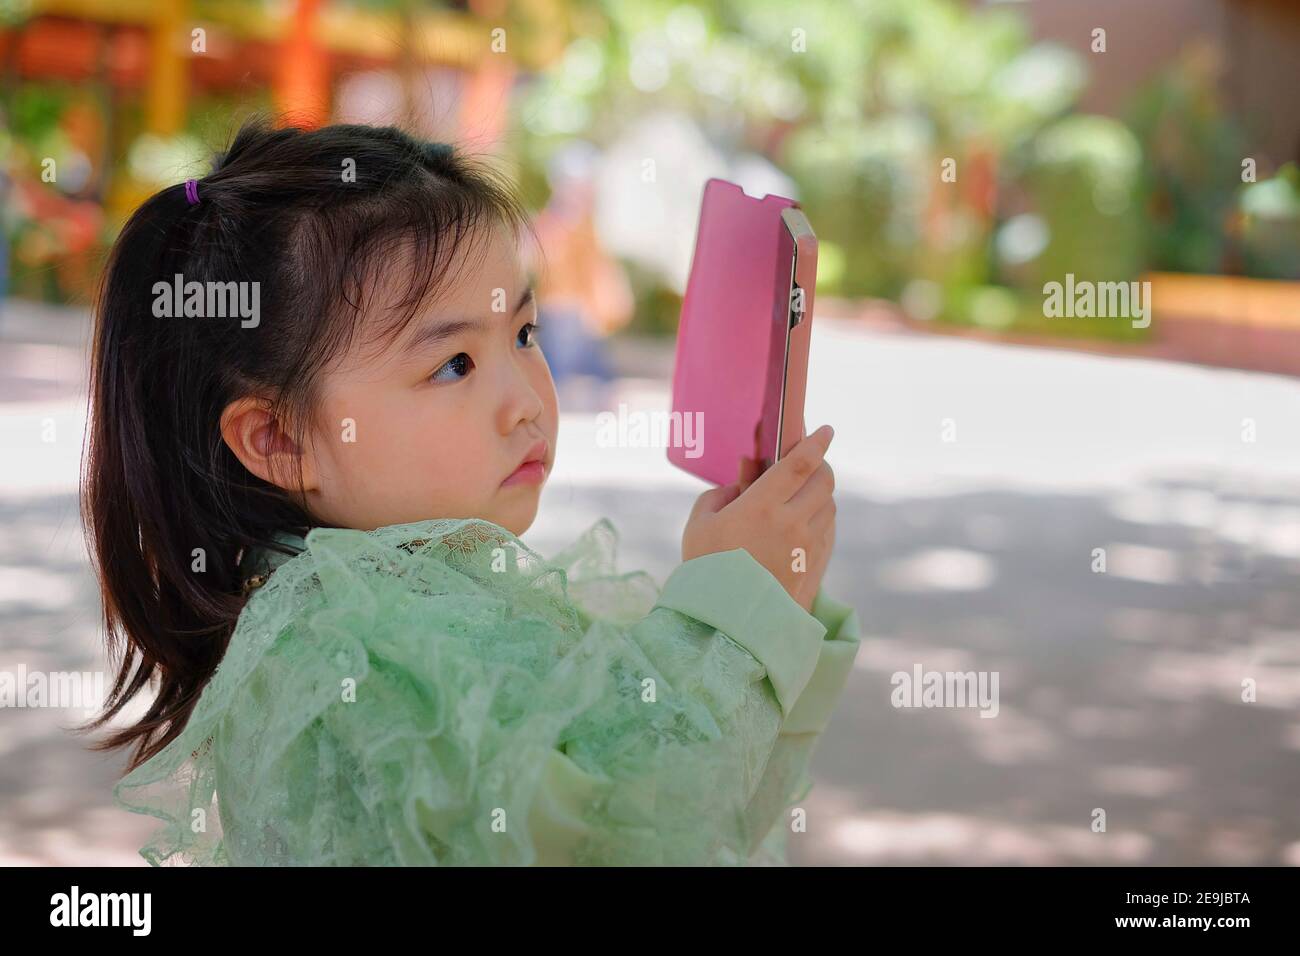 Ein nettes junges asiatisches Mädchen hält ein rosa Smartphone und versucht, ein Bild in ihrem Urlaub zu machen. Stockfoto